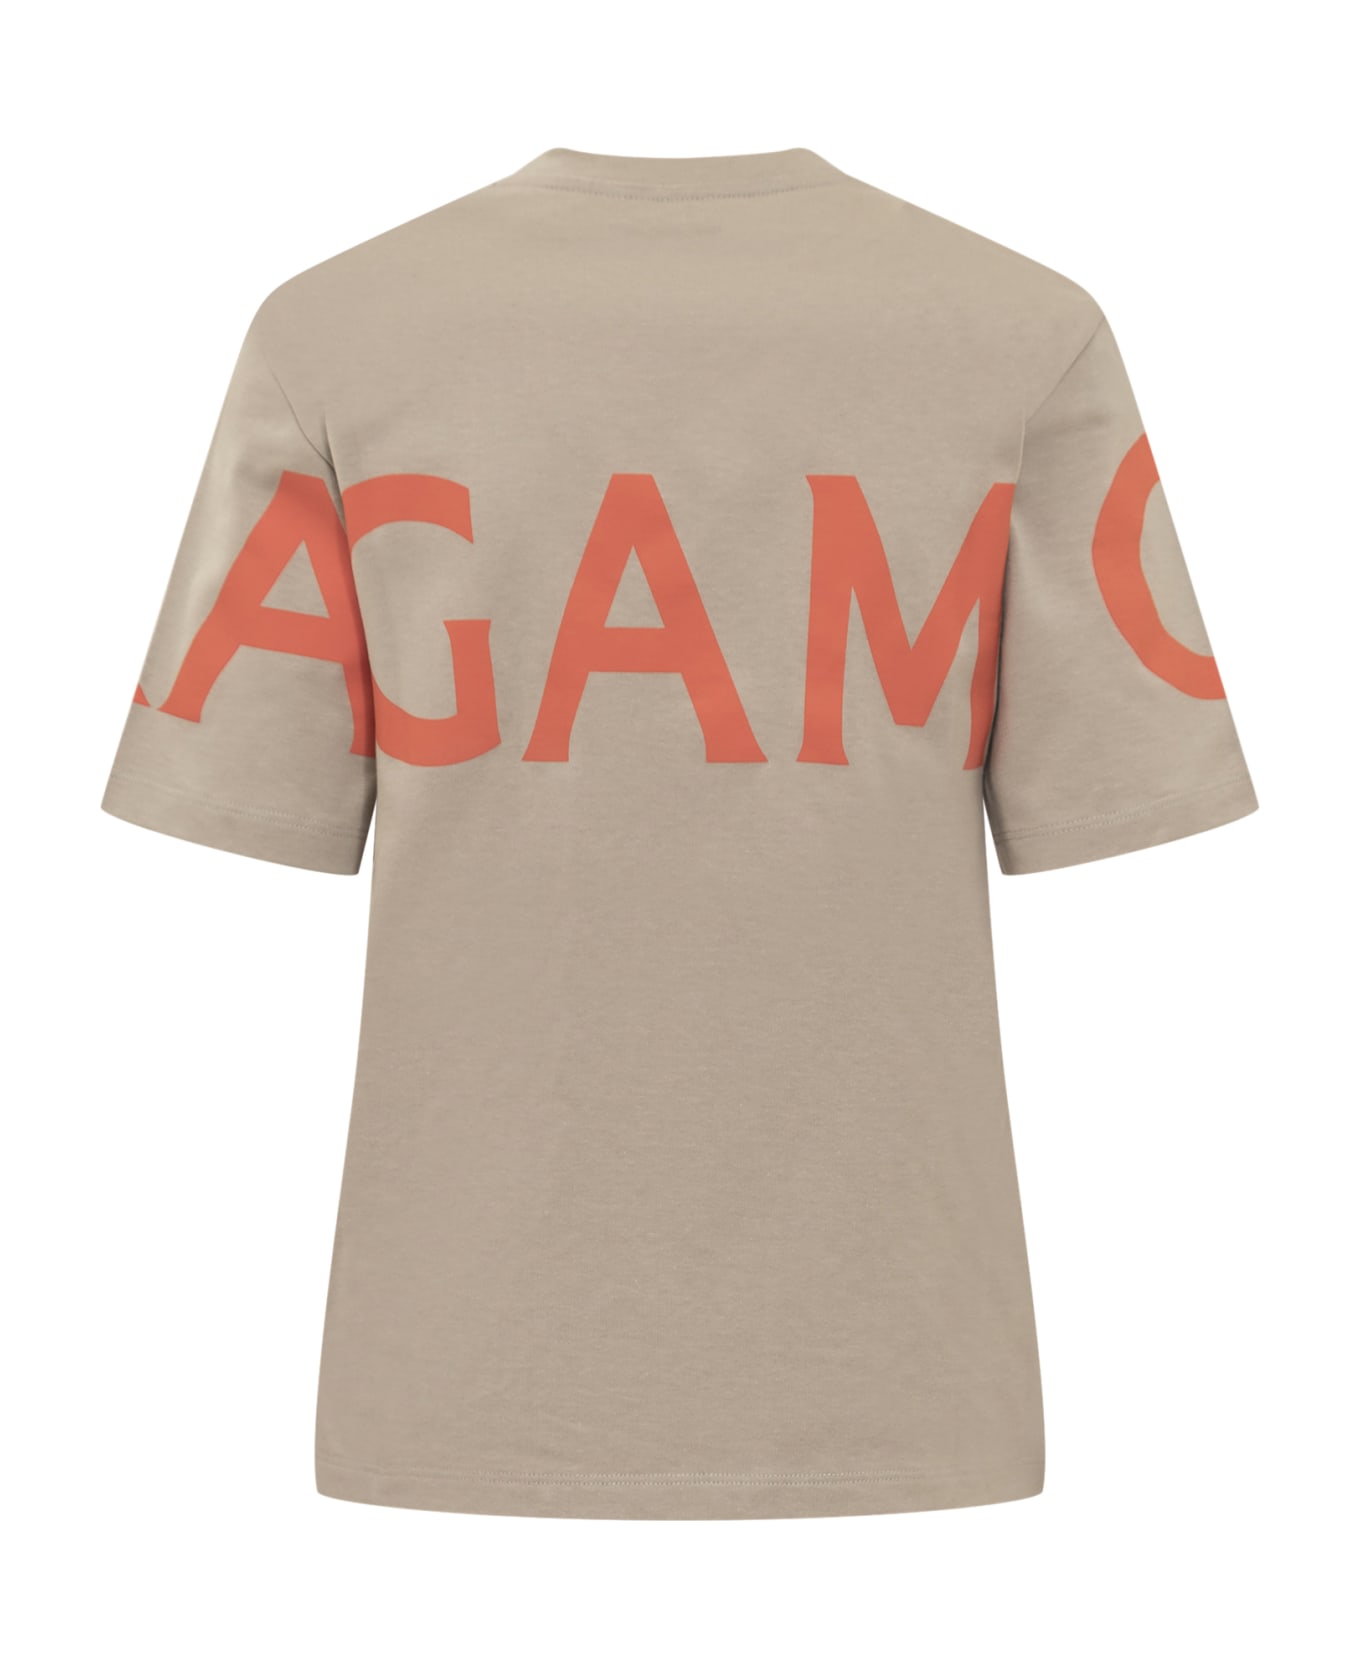 Ferragamo Manifesto T-shirt - BEIGE/SAND/MANDARINO Tシャツ